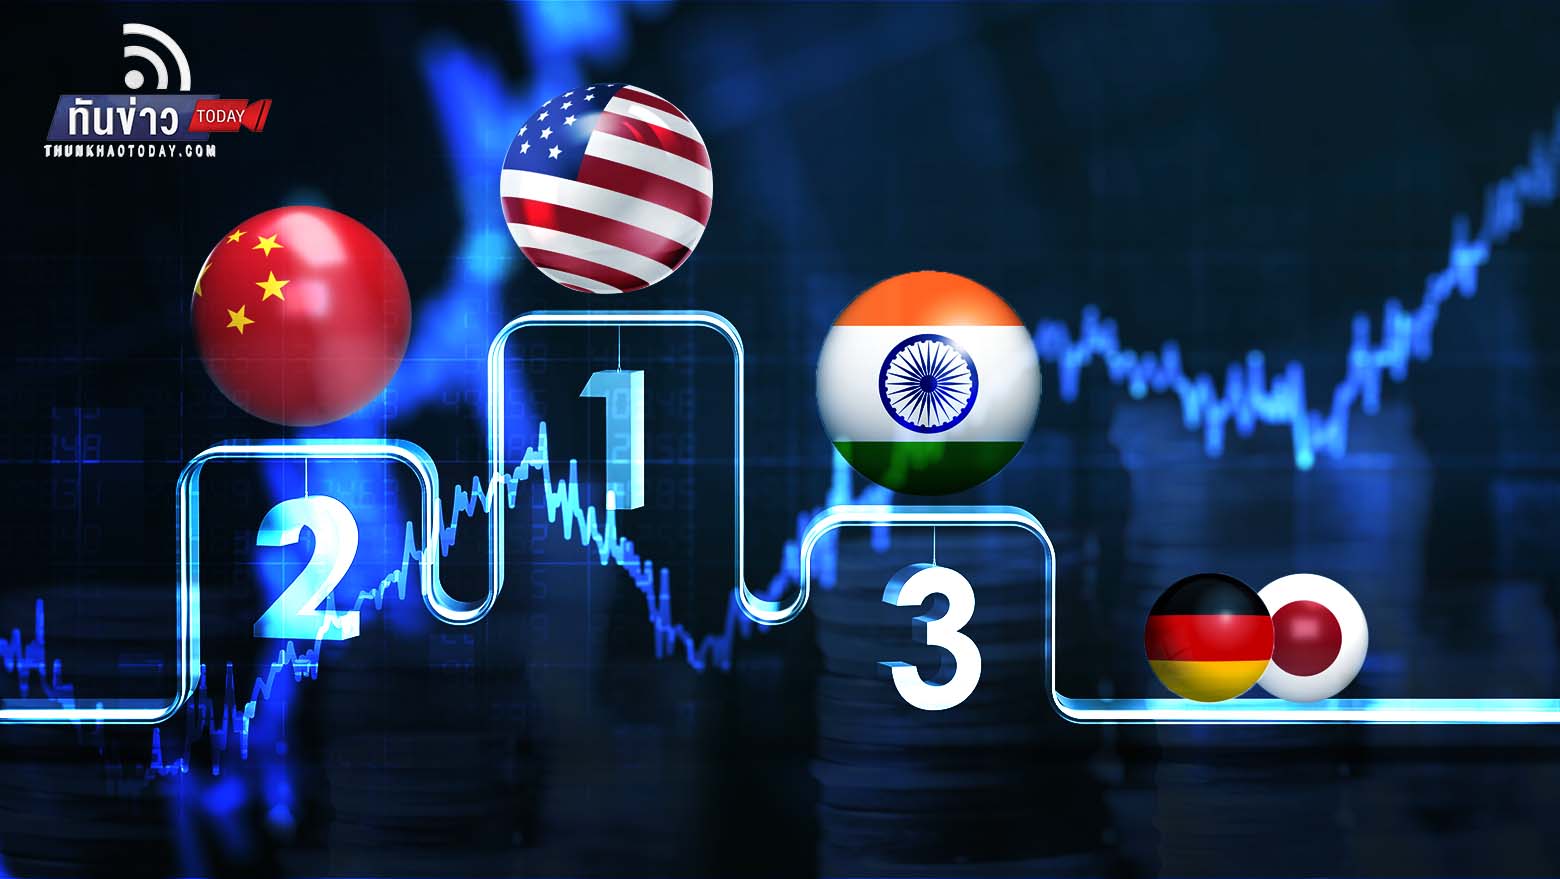 “อินเดียจ่อแซงญี่ปุ่น-เยอรมนี ขึ้นแท่นประเทศเศรษฐกิจใหญ่อันดับ 3 ของโลก  ภายในปี 2573